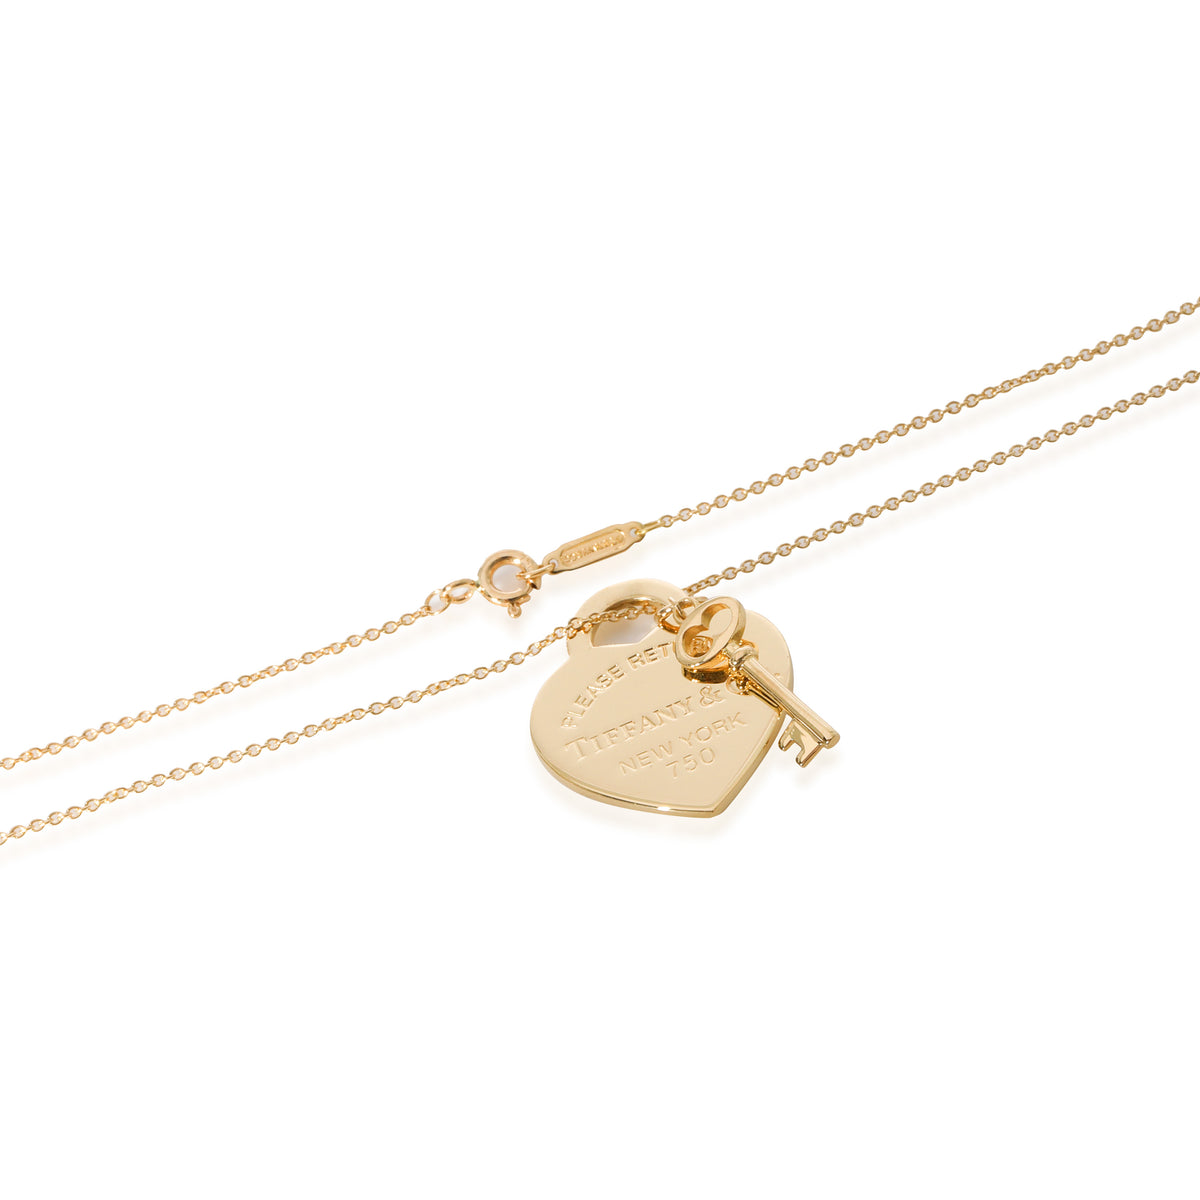 Tiffany & Co 'Return To Tiffany' Gold Heart Necklace | Farringdons Jewellery